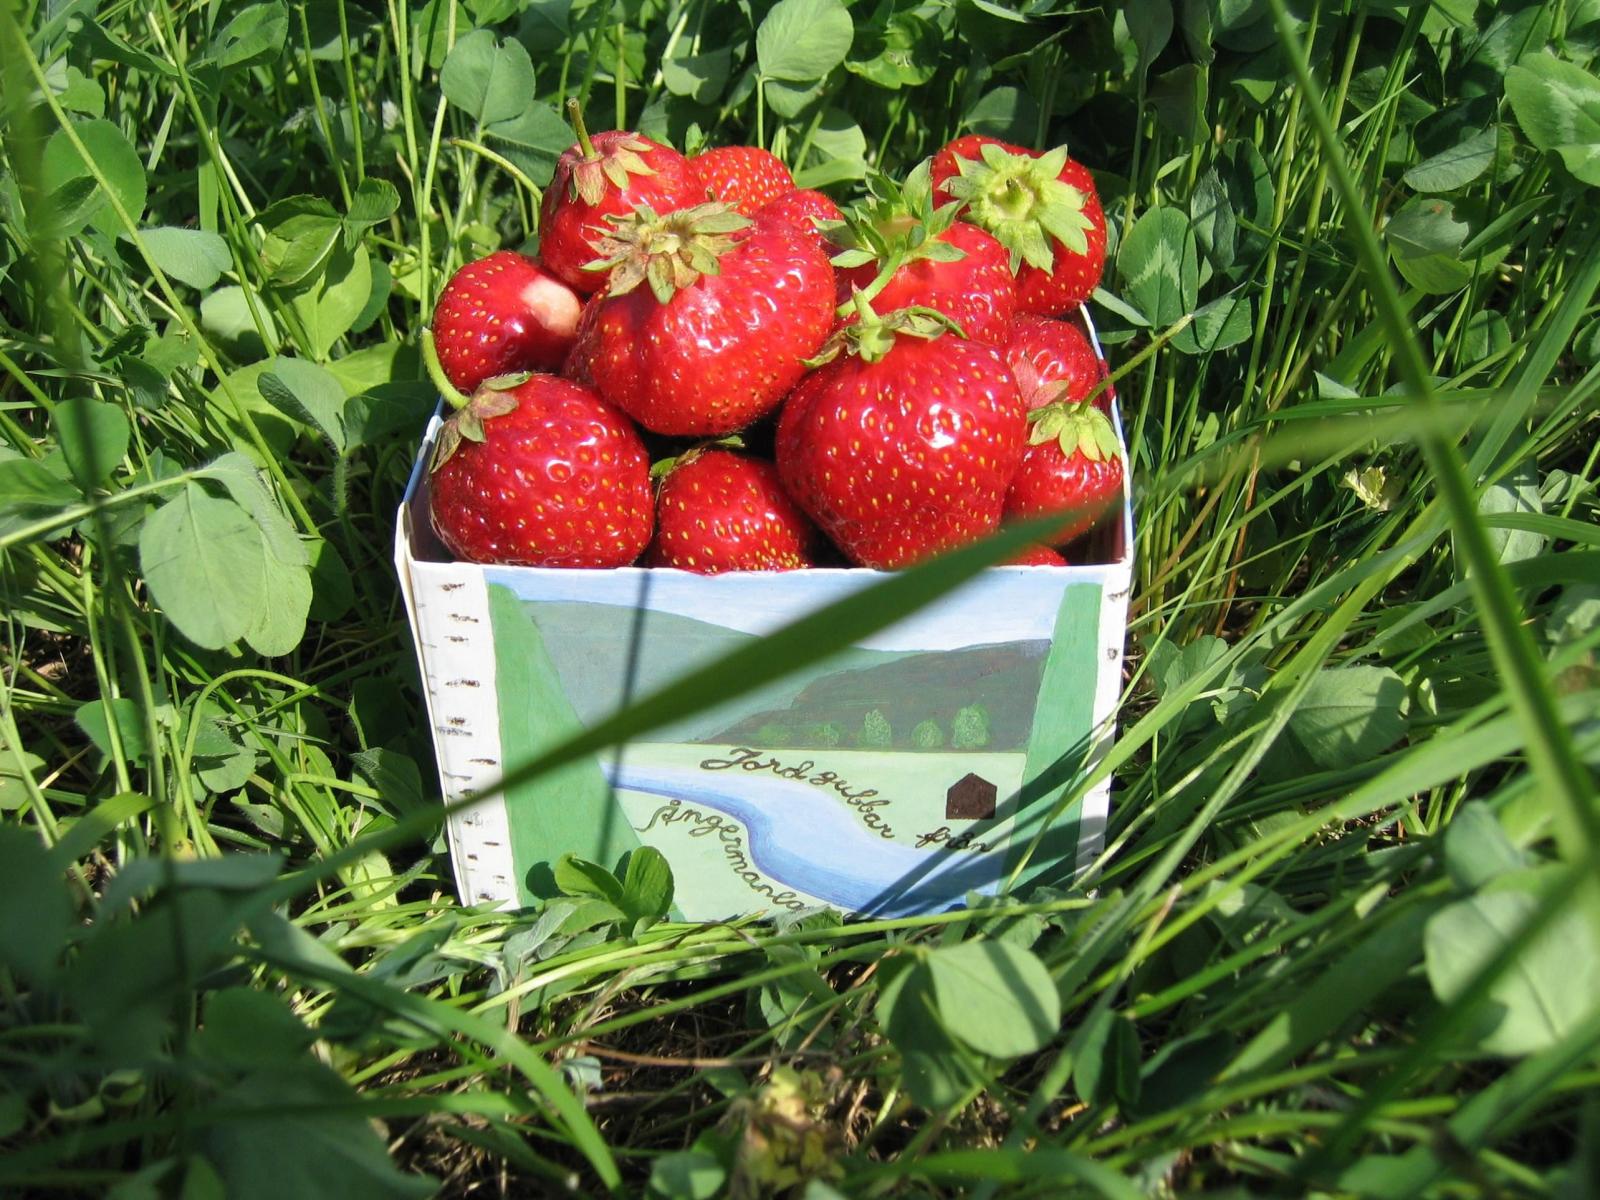 KRAV odlade jordgubbar. Smakar himmelskt och härligt att kunna bjuda på sommarens frukter utan kemiska tillsatser!